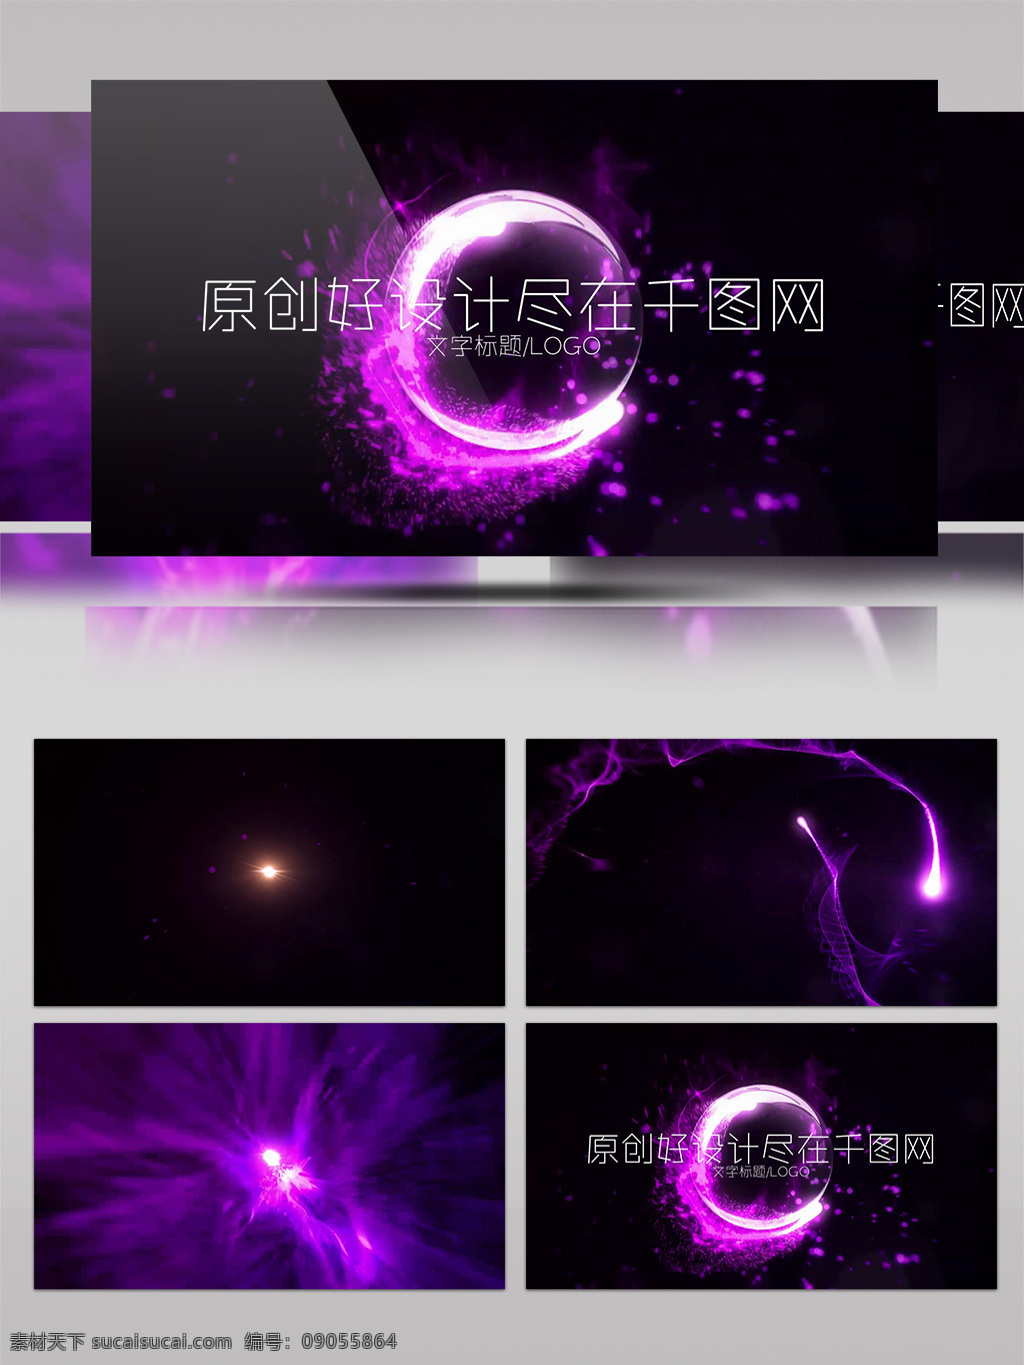 紫色 神秘 粒子 汇聚 logo 演绎 会声会影 模板 片头 文字logo 奇幻 logo演绎 会声会影模板 企业 x8 开场模板 片头模板 会声会影片头